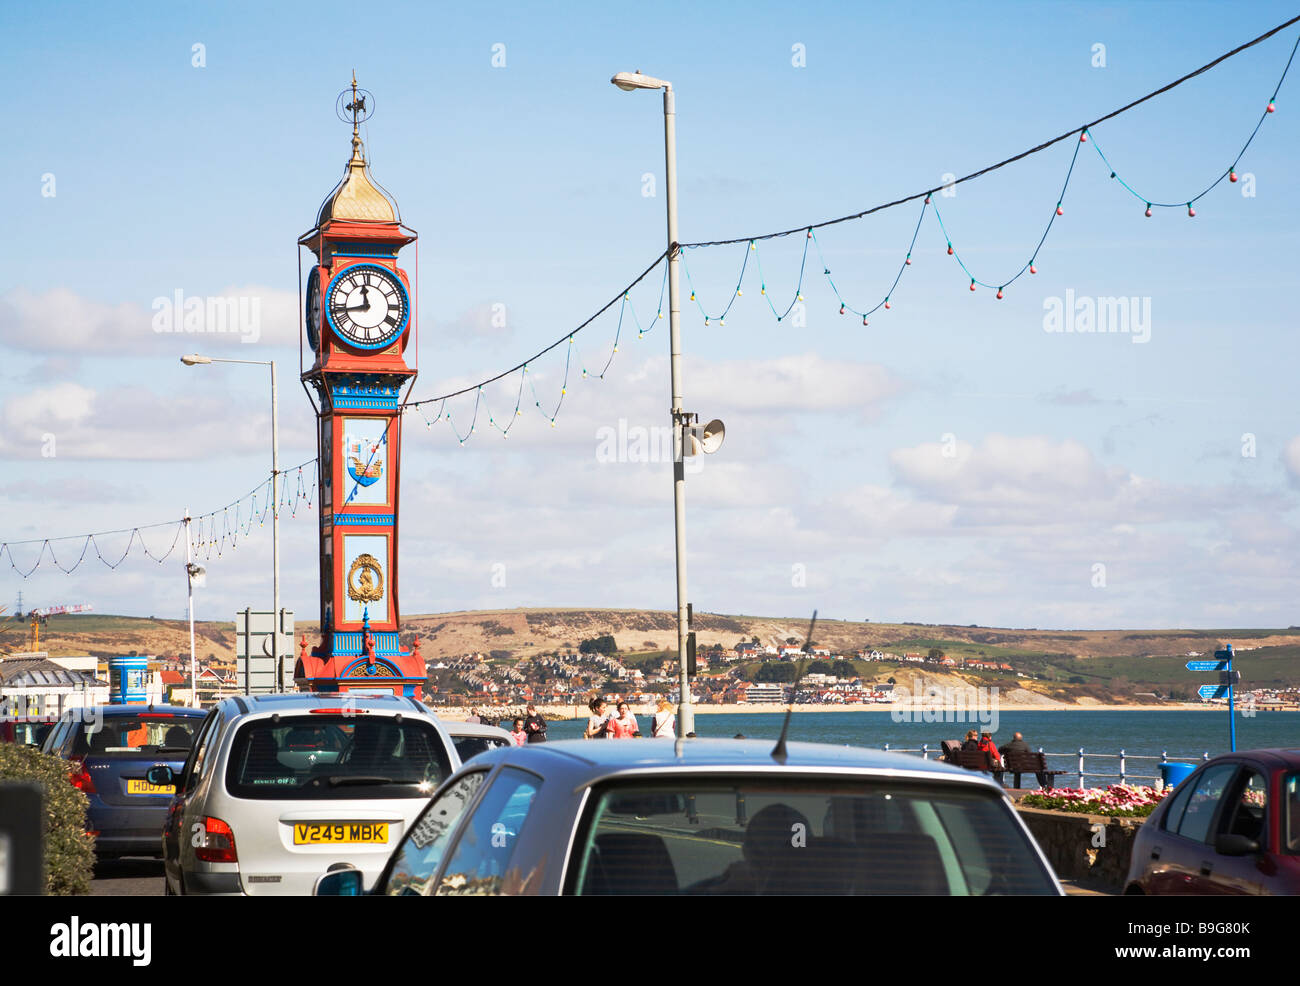 Orologio del Giubileo e il traffico lungo la trafficata strada lungomare. Città balneare di Weymouth, Dorset. Regno Unito. Foto Stock